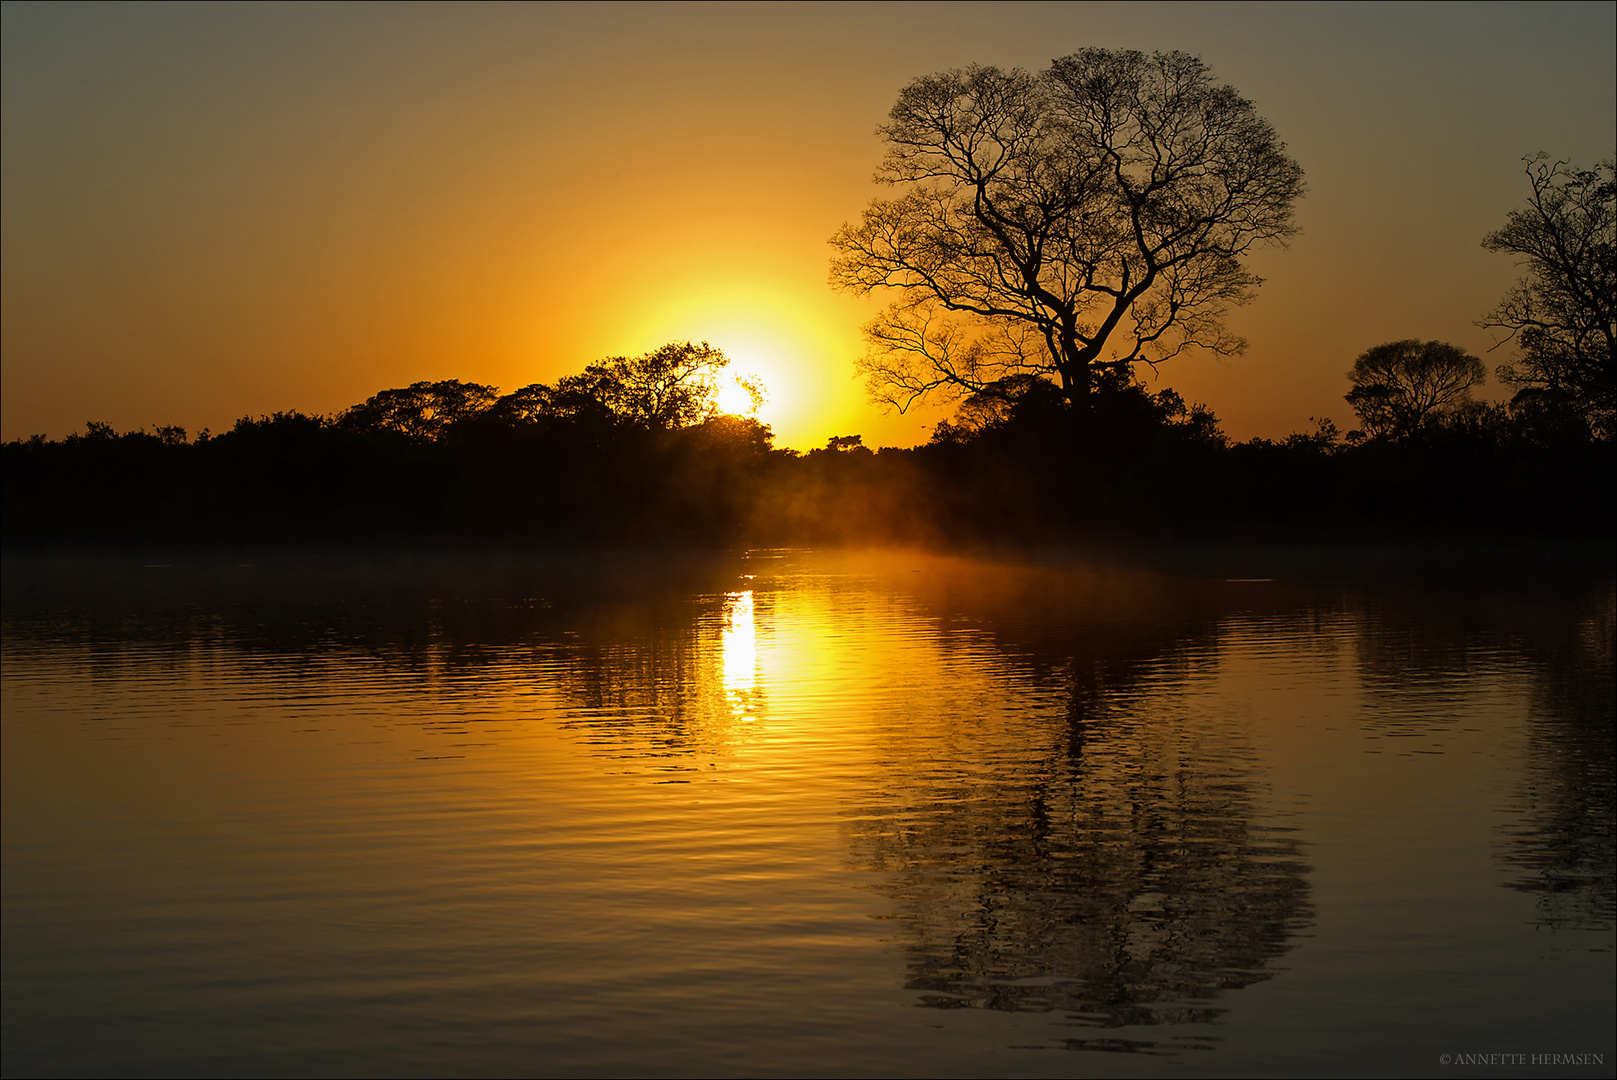 Pantanal [29] - Sunrise on Rio Claro